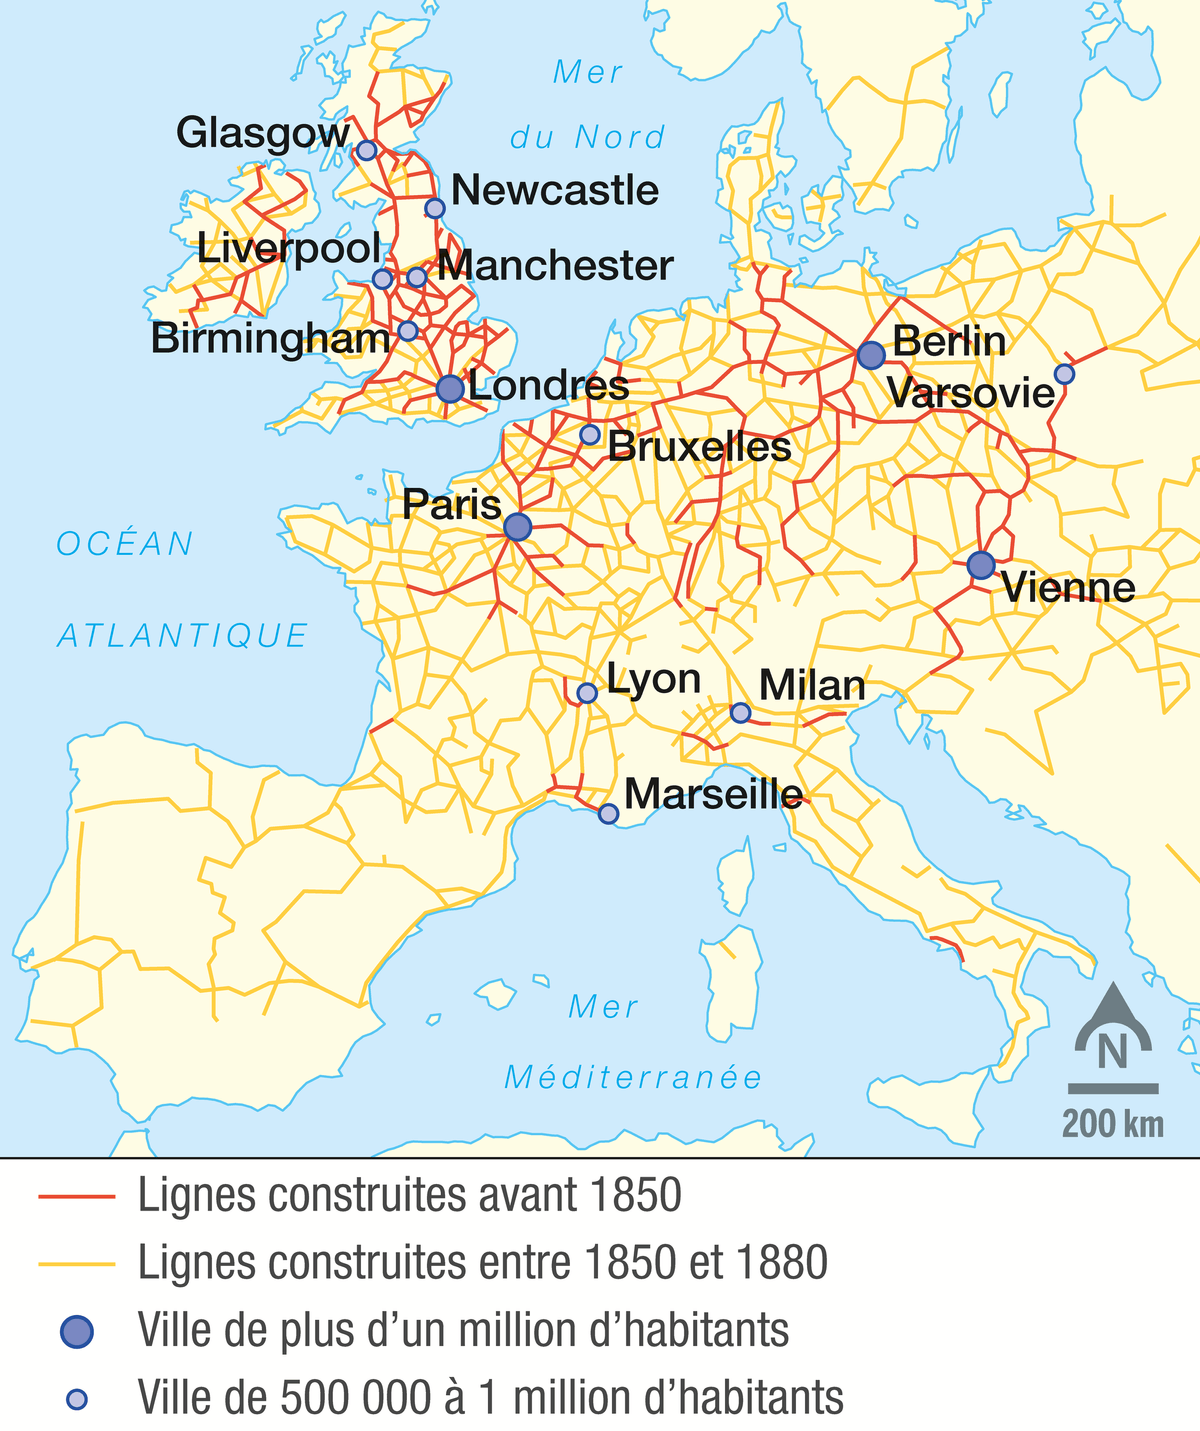 Le réseau ferré en Europe au XIXe siècle